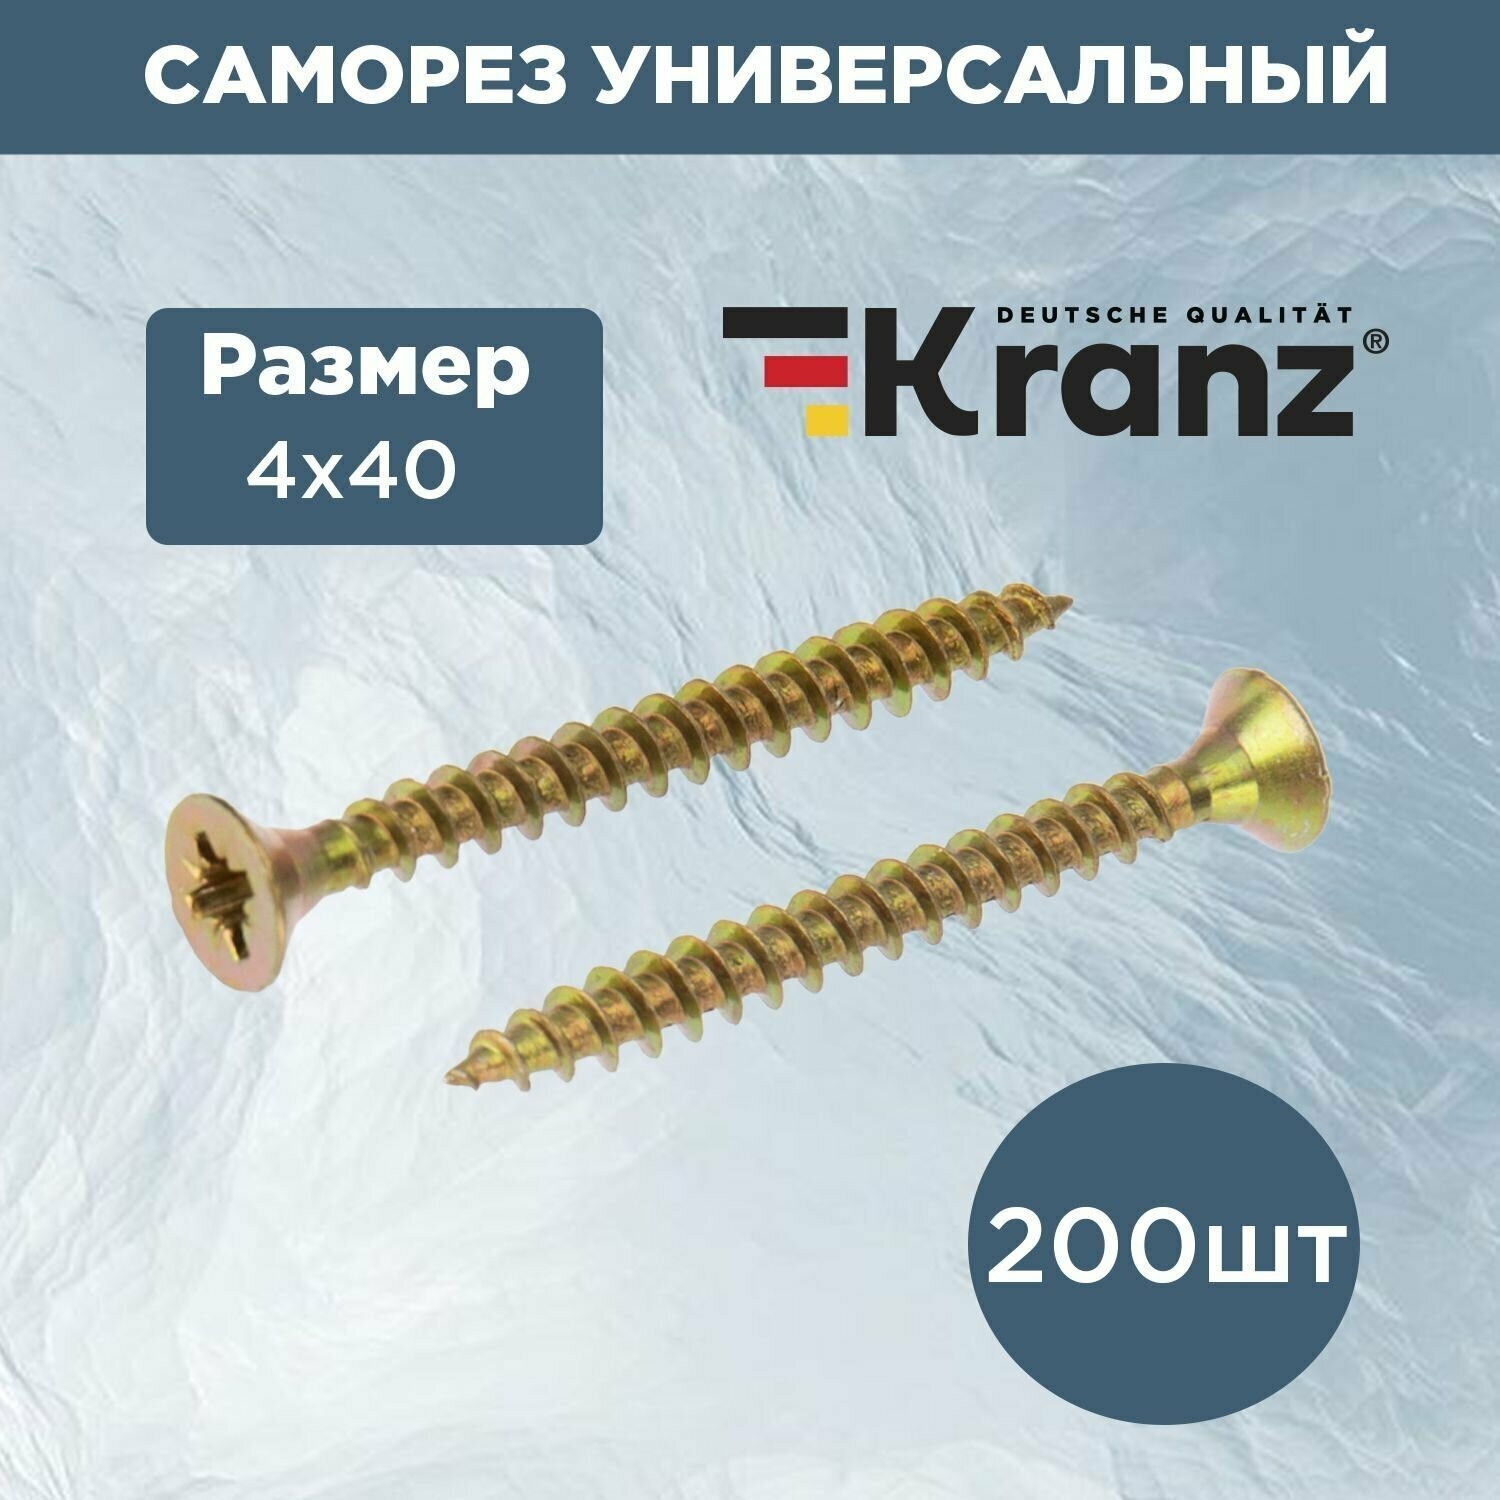 Саморез универсальный для дерева и металла KRANZ 4х40 с противокоррозионным покрытием из желтого цинка короб 200 шт.